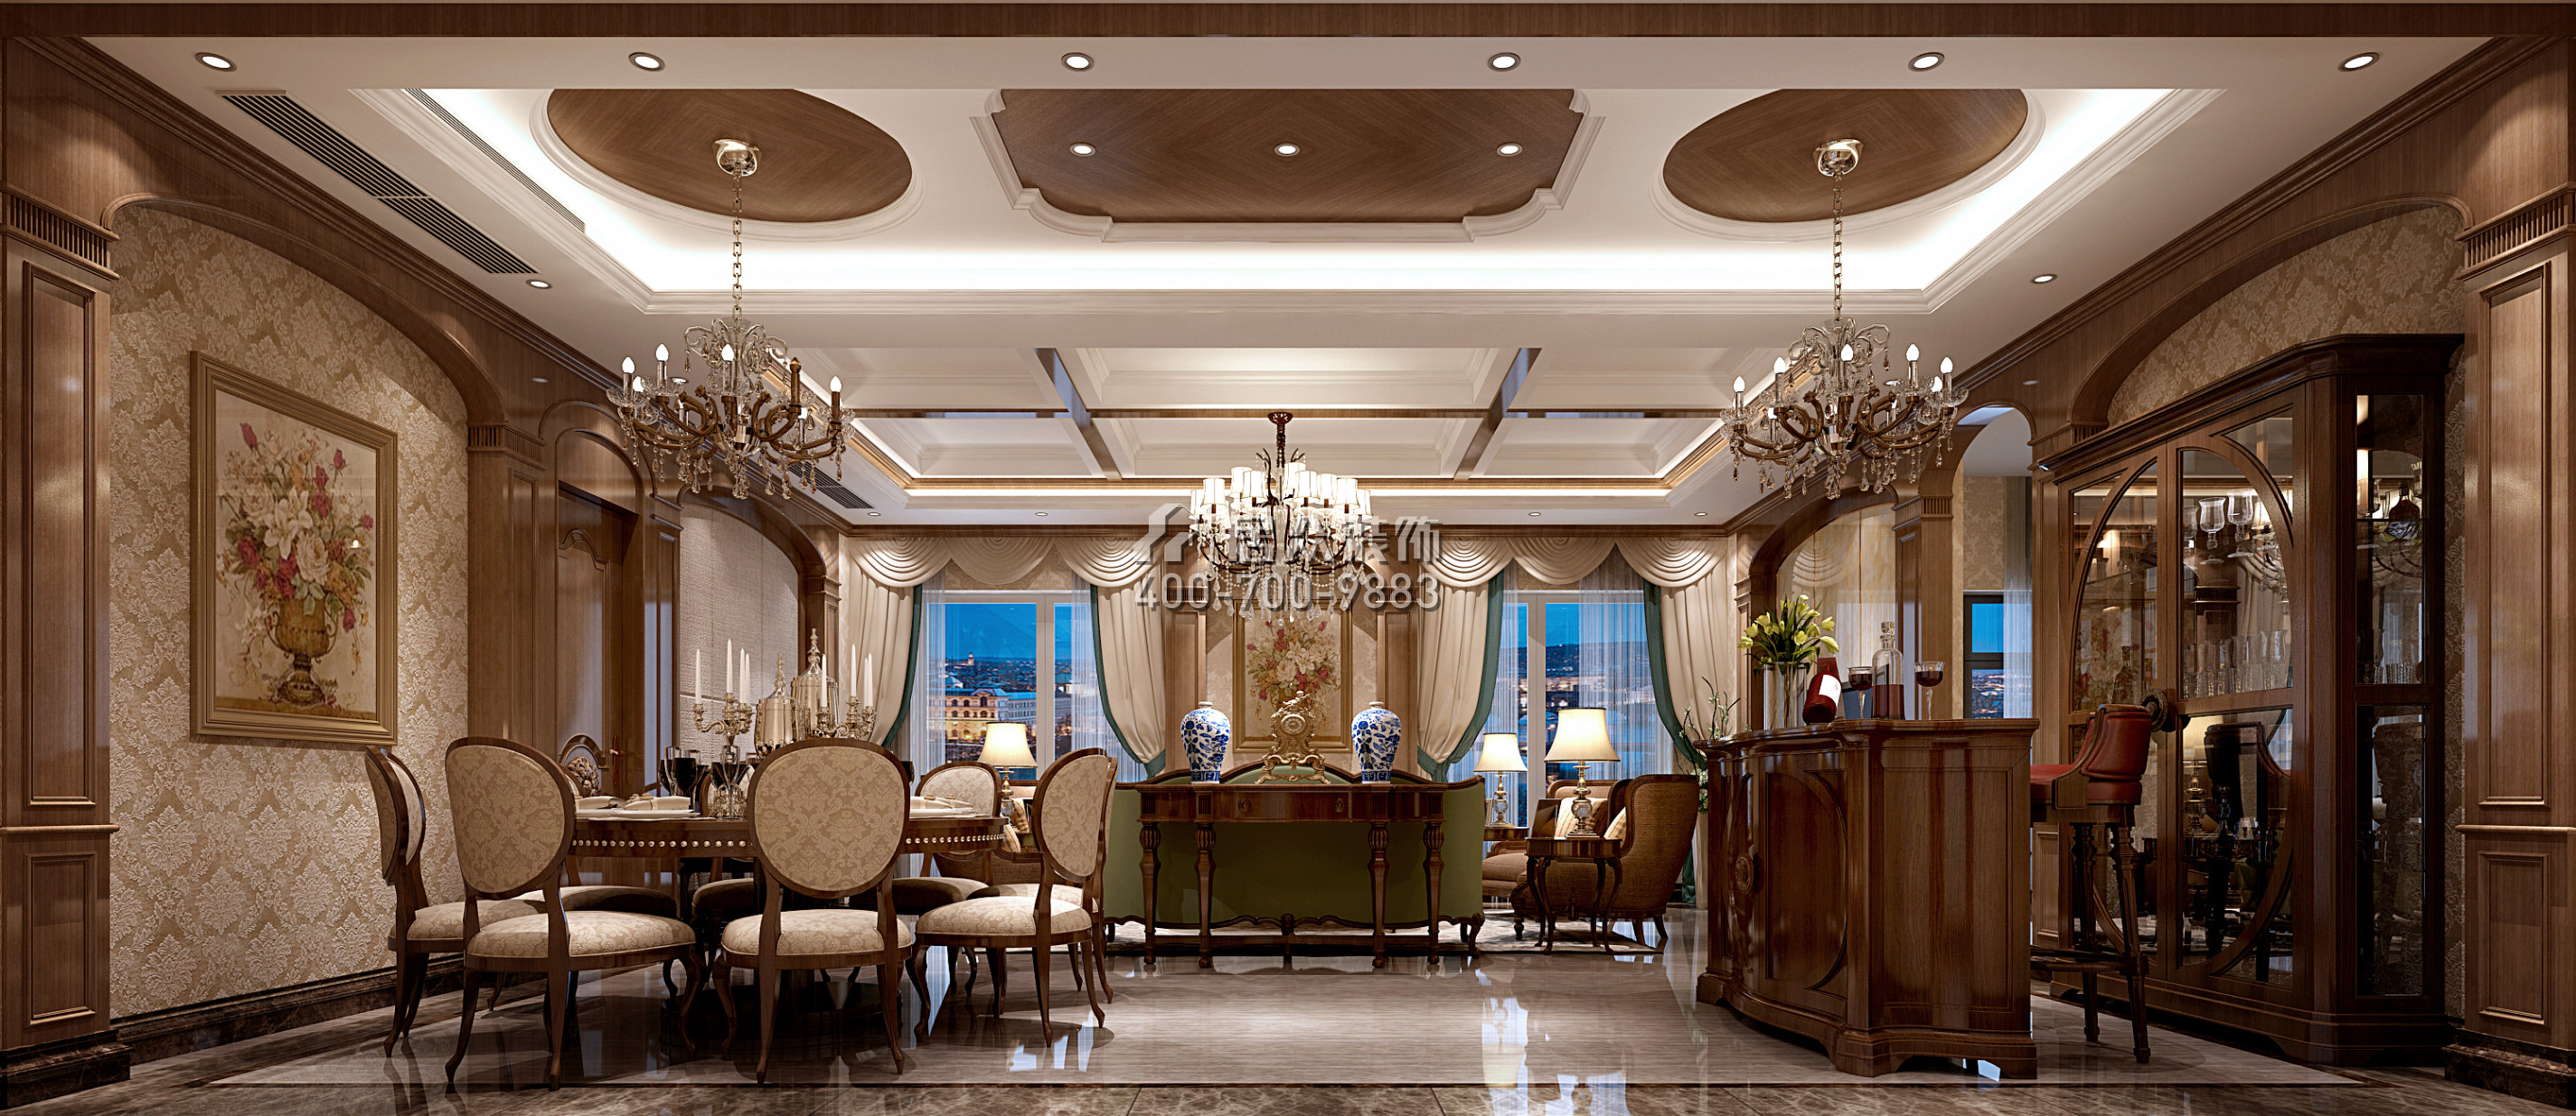 海印長城220平方米美式風格復式戶型客餐廳一體裝修效果圖